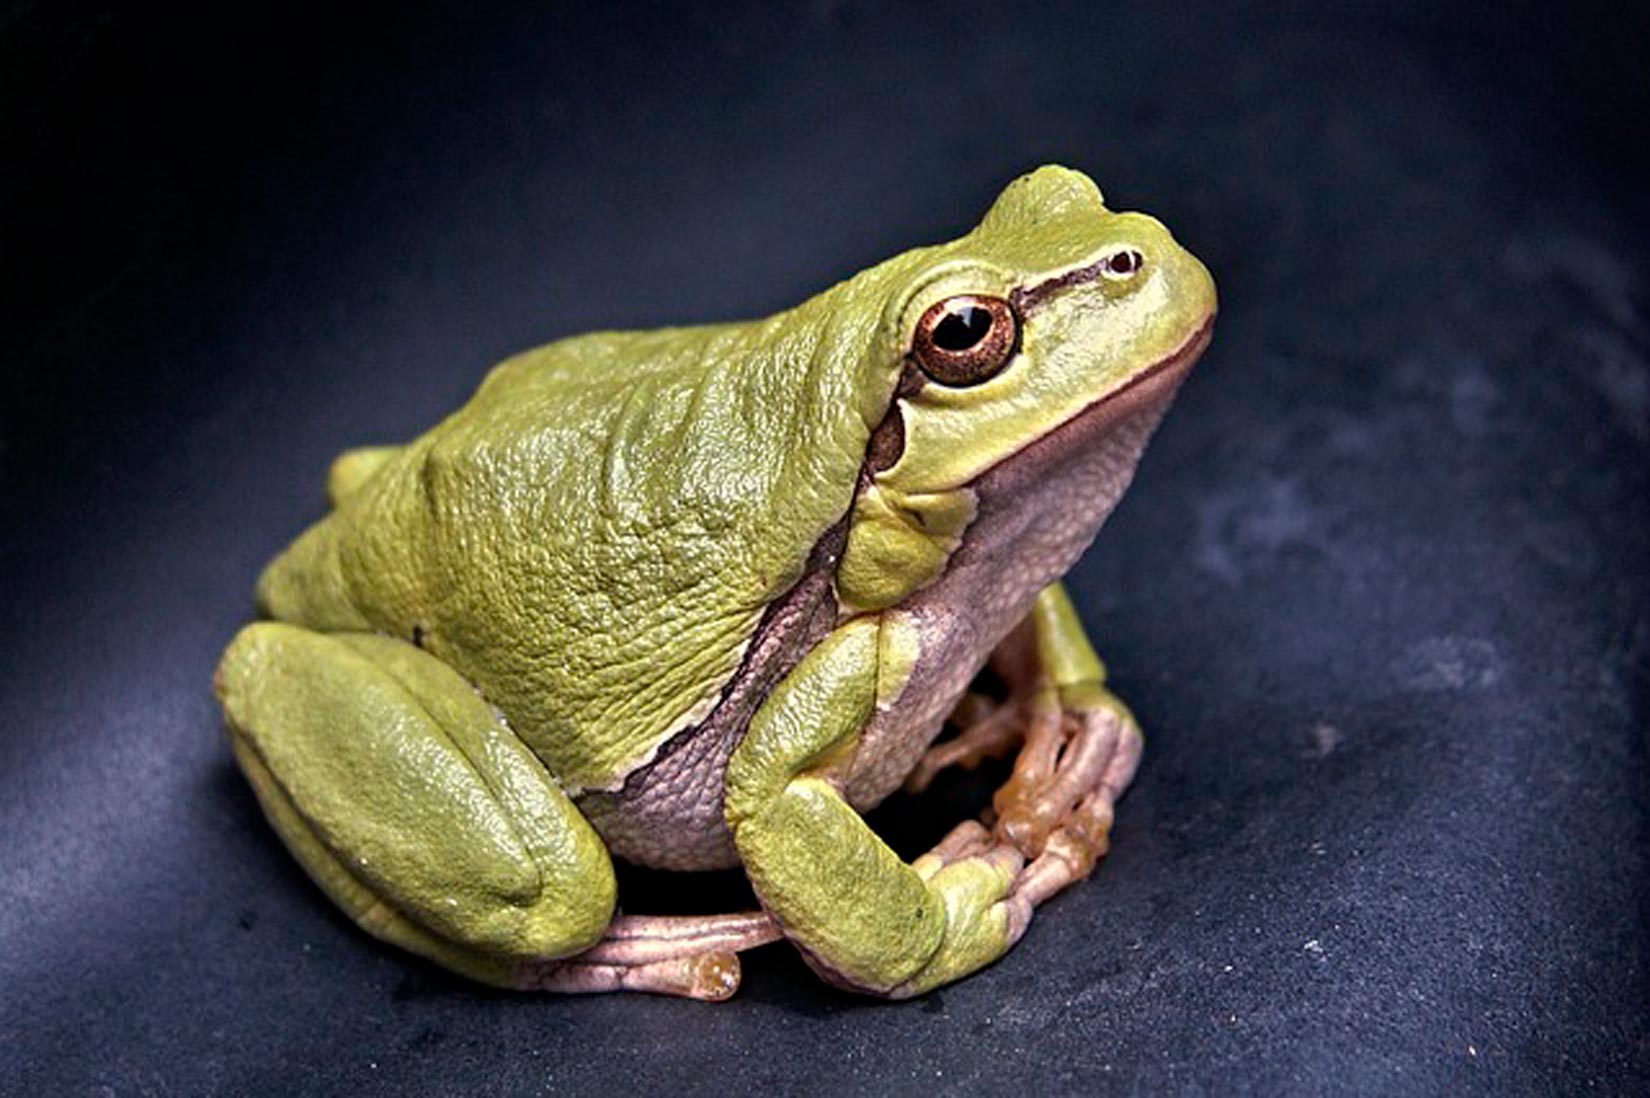 Slika prikazuje zelenkastu žabu koja sjedi . Koža joj je grube teksture, doima se vlažno te ima velike izbuljene oči smeđe boje.